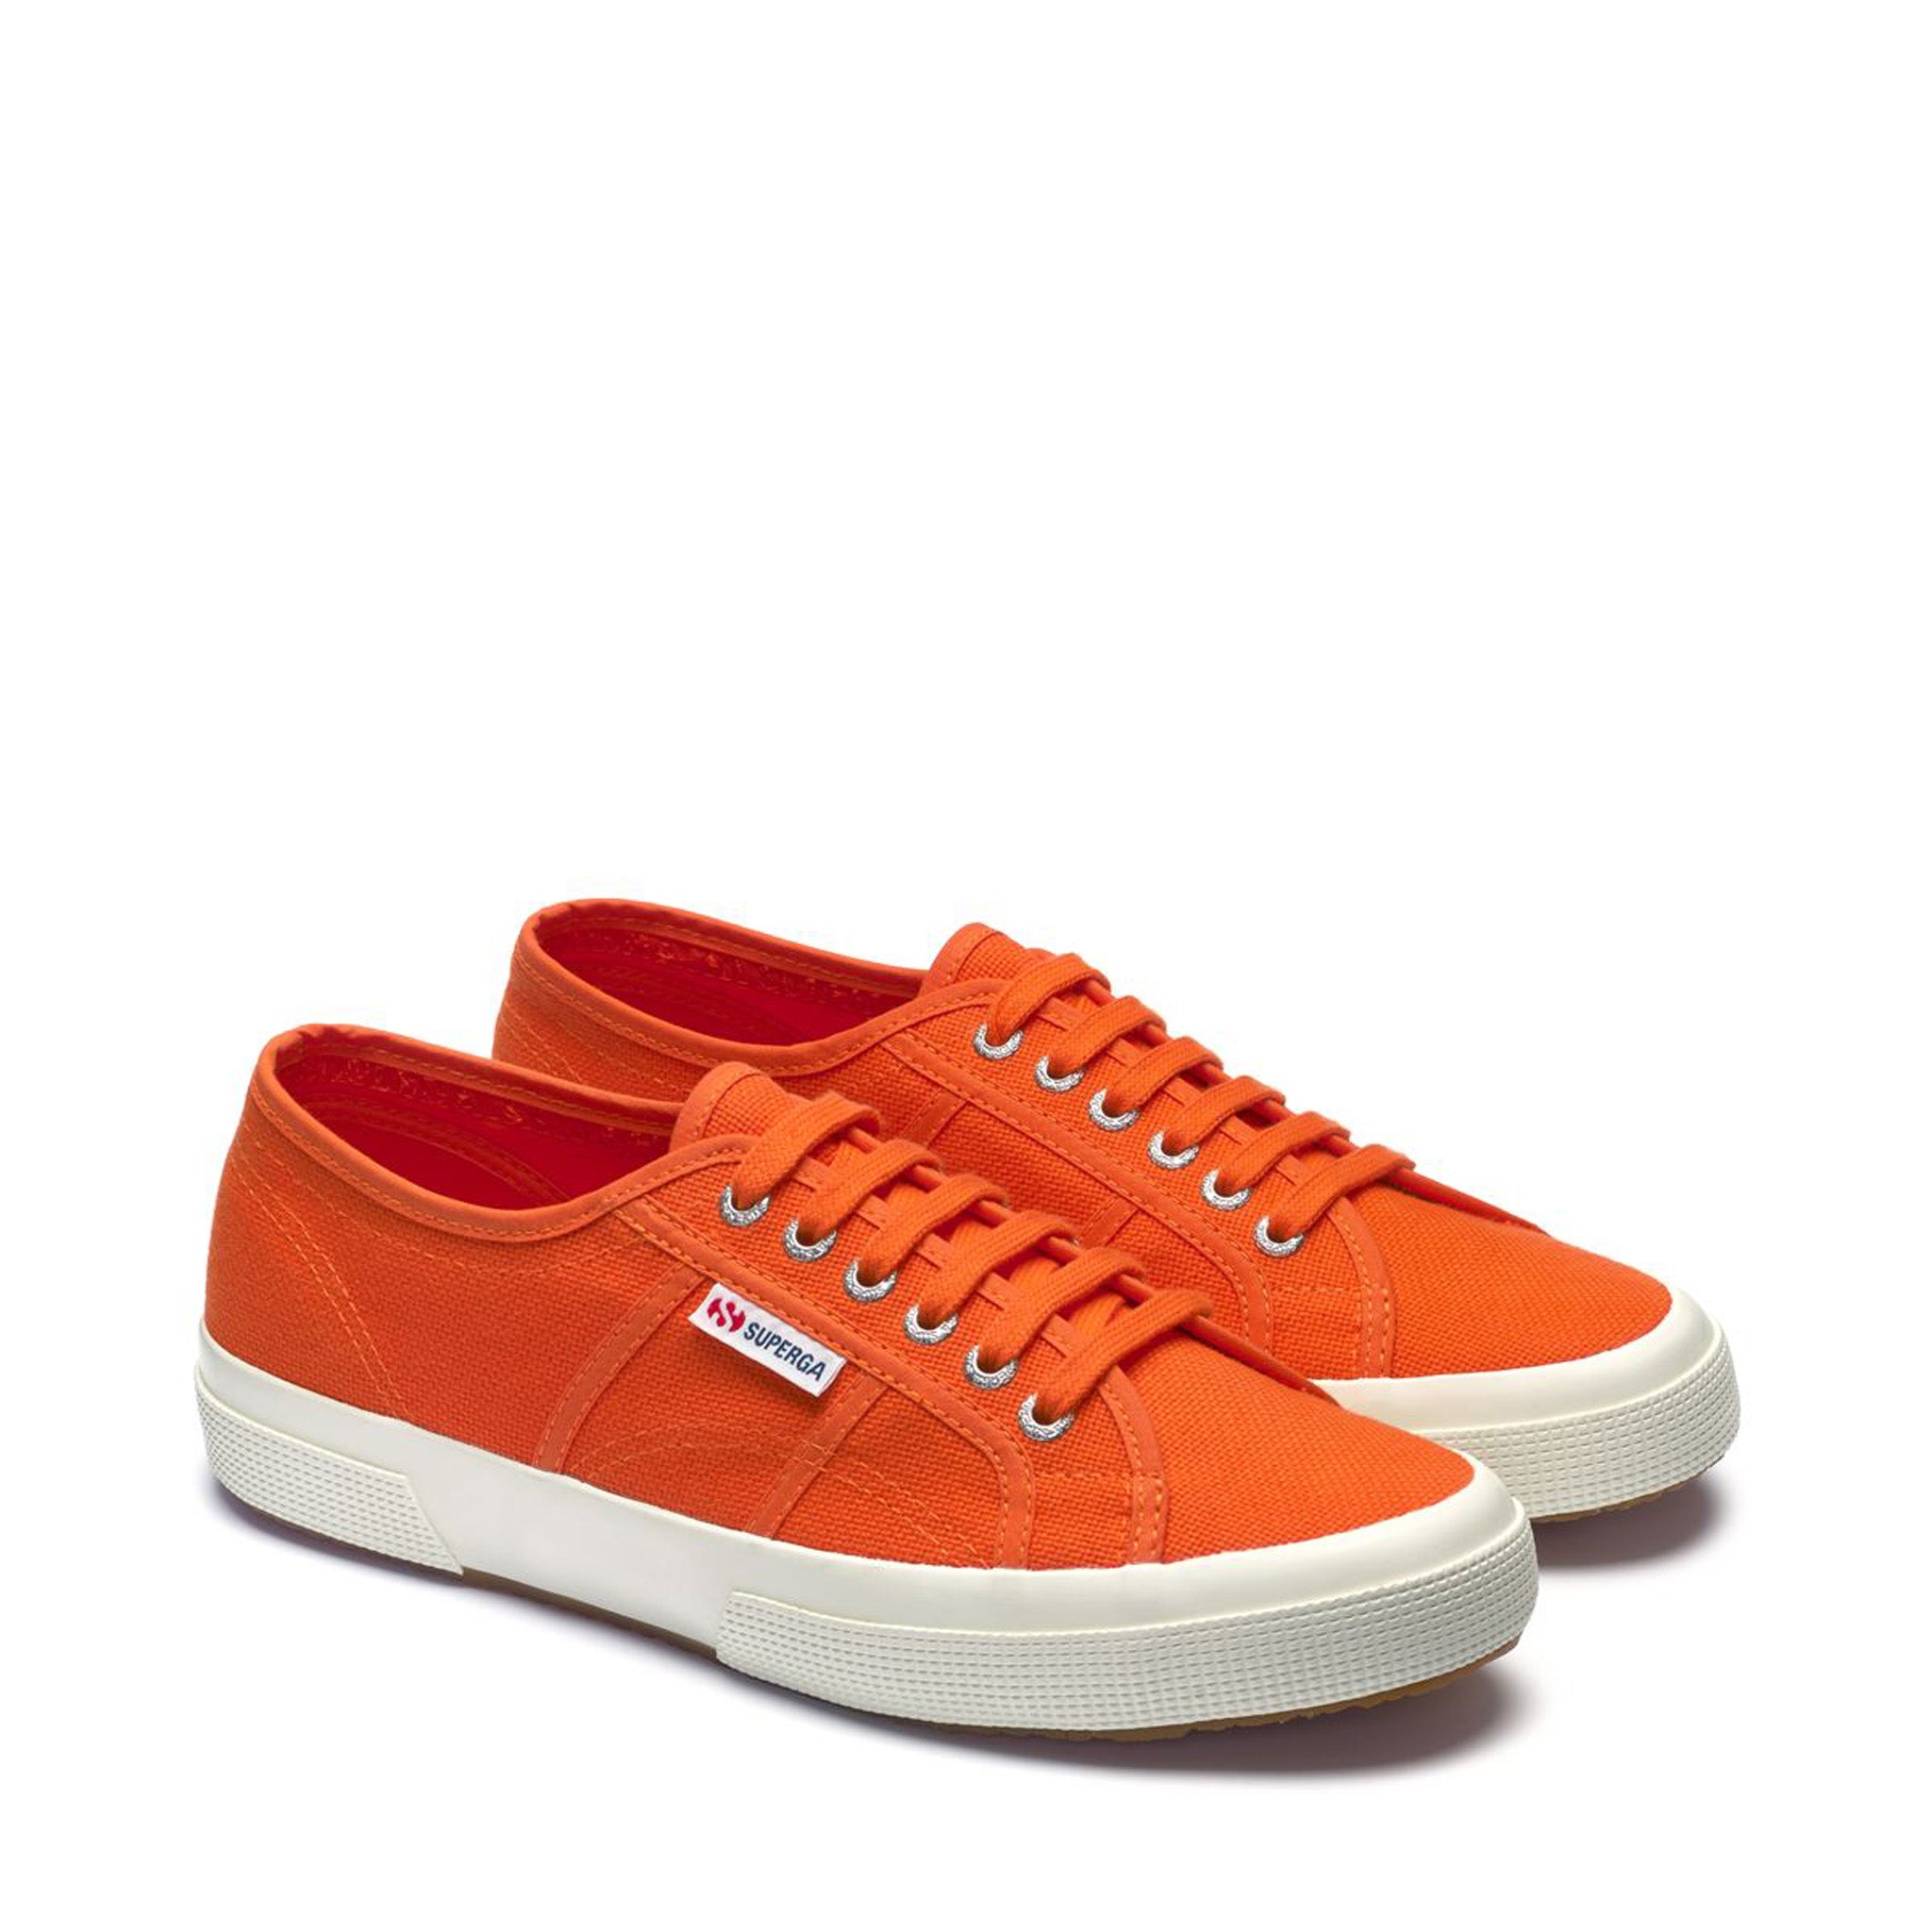 2750 Cotu Classic Sneakers - Orange Avorio – Superga US